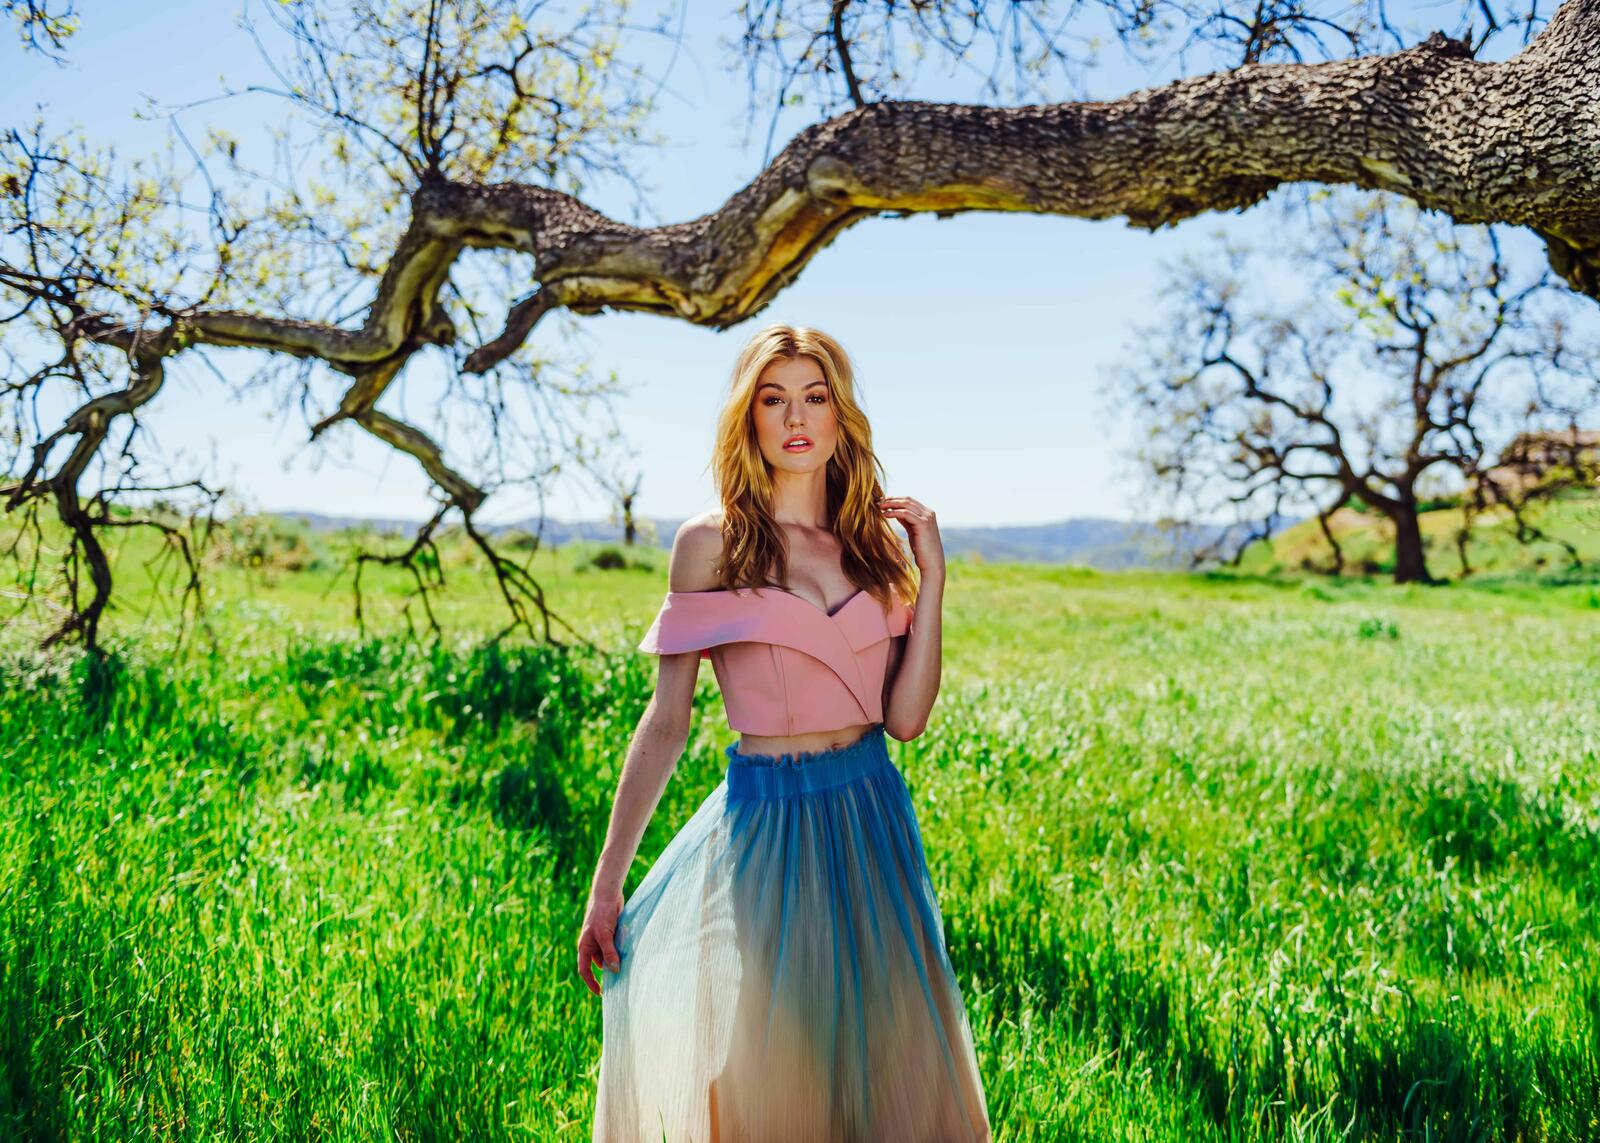 Бесплатное фото Девушка в легкой юбке на фоне зеленого поля